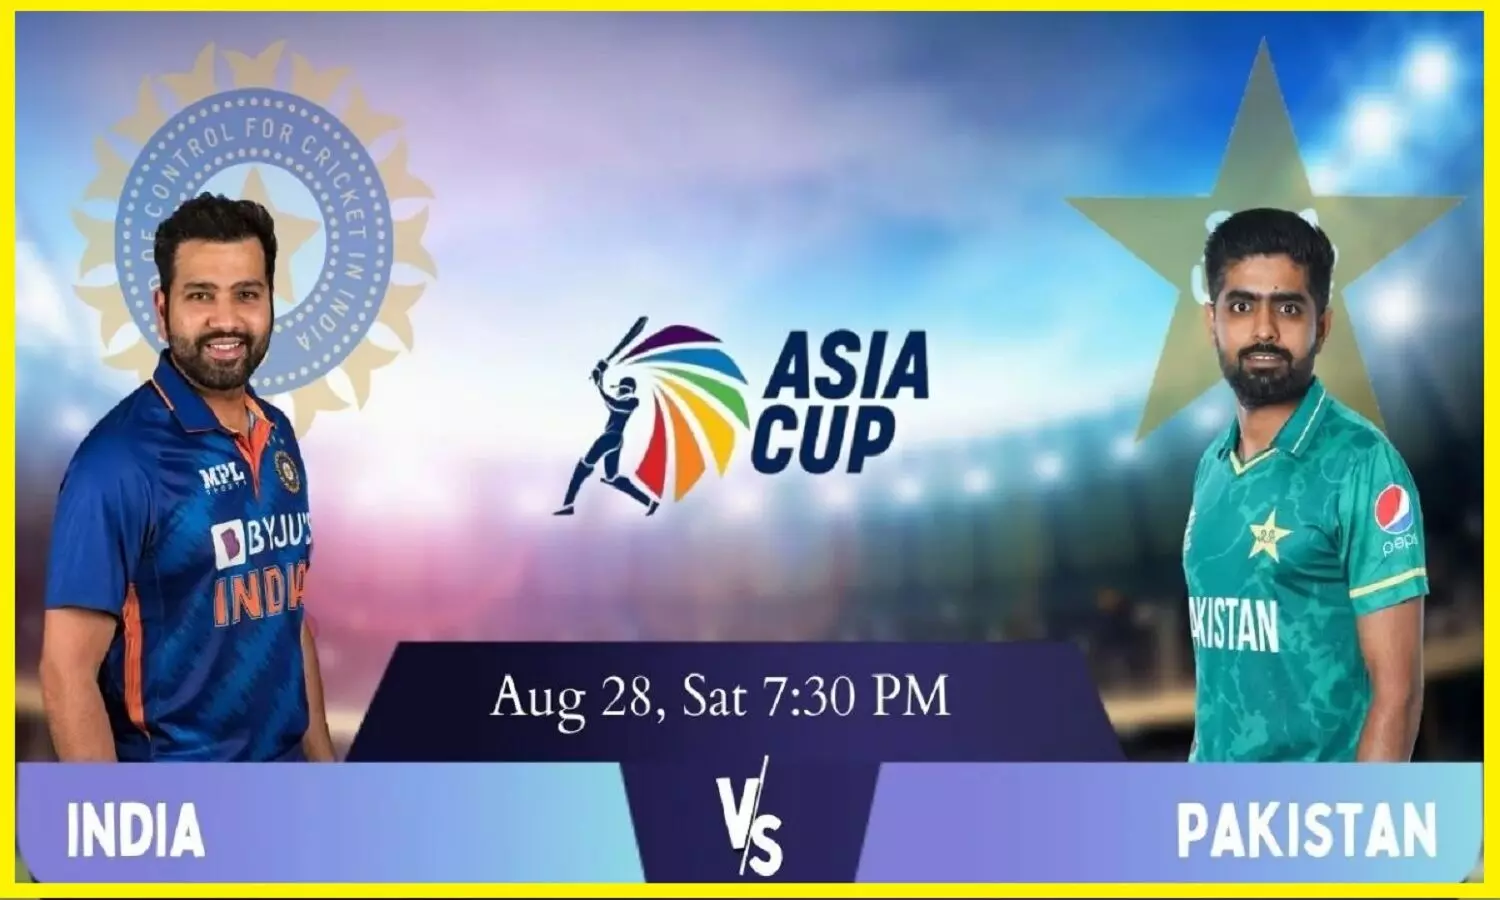 IND Vs PAK Playing 11: Asia Cup India Vs Pakistan का मैच आज, देखें दोनों टीमों की प्लेइंग 11 टीम